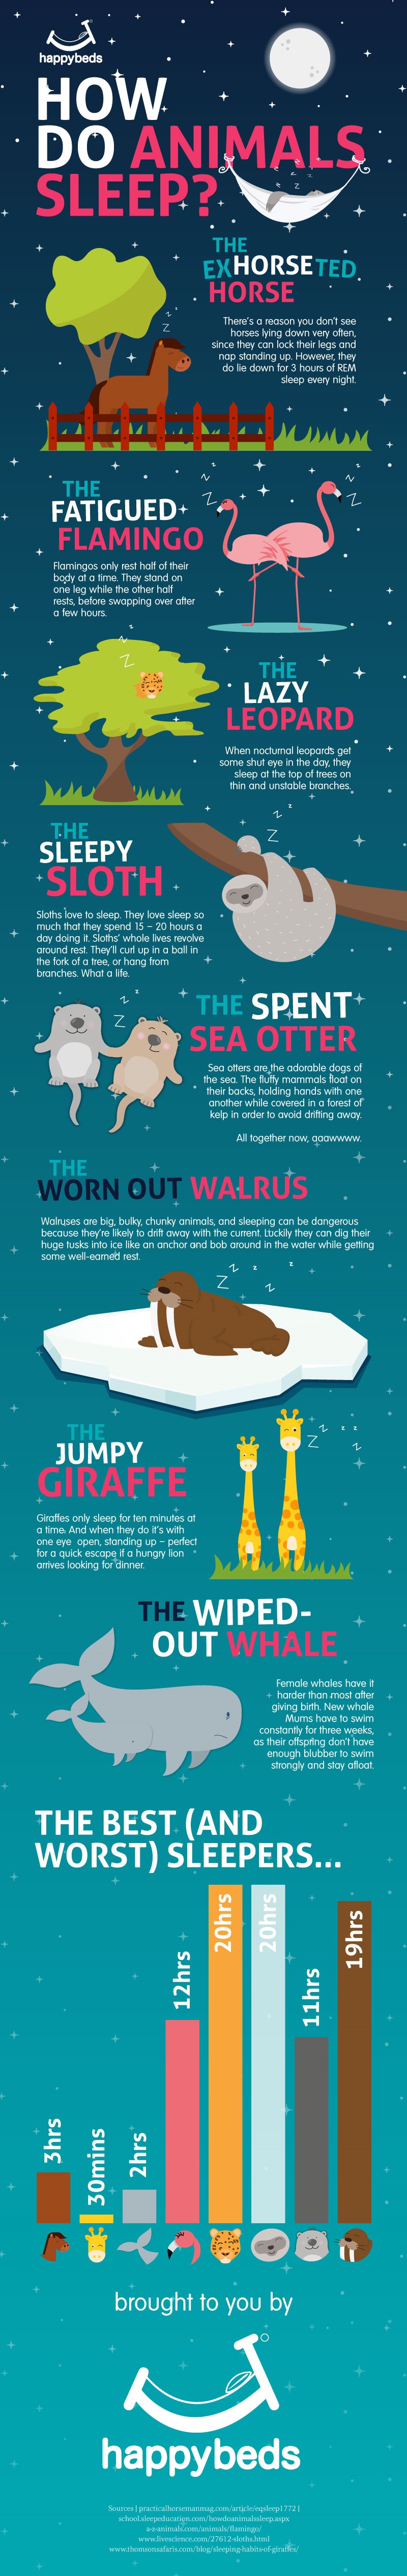 How Do Animals Sleep?